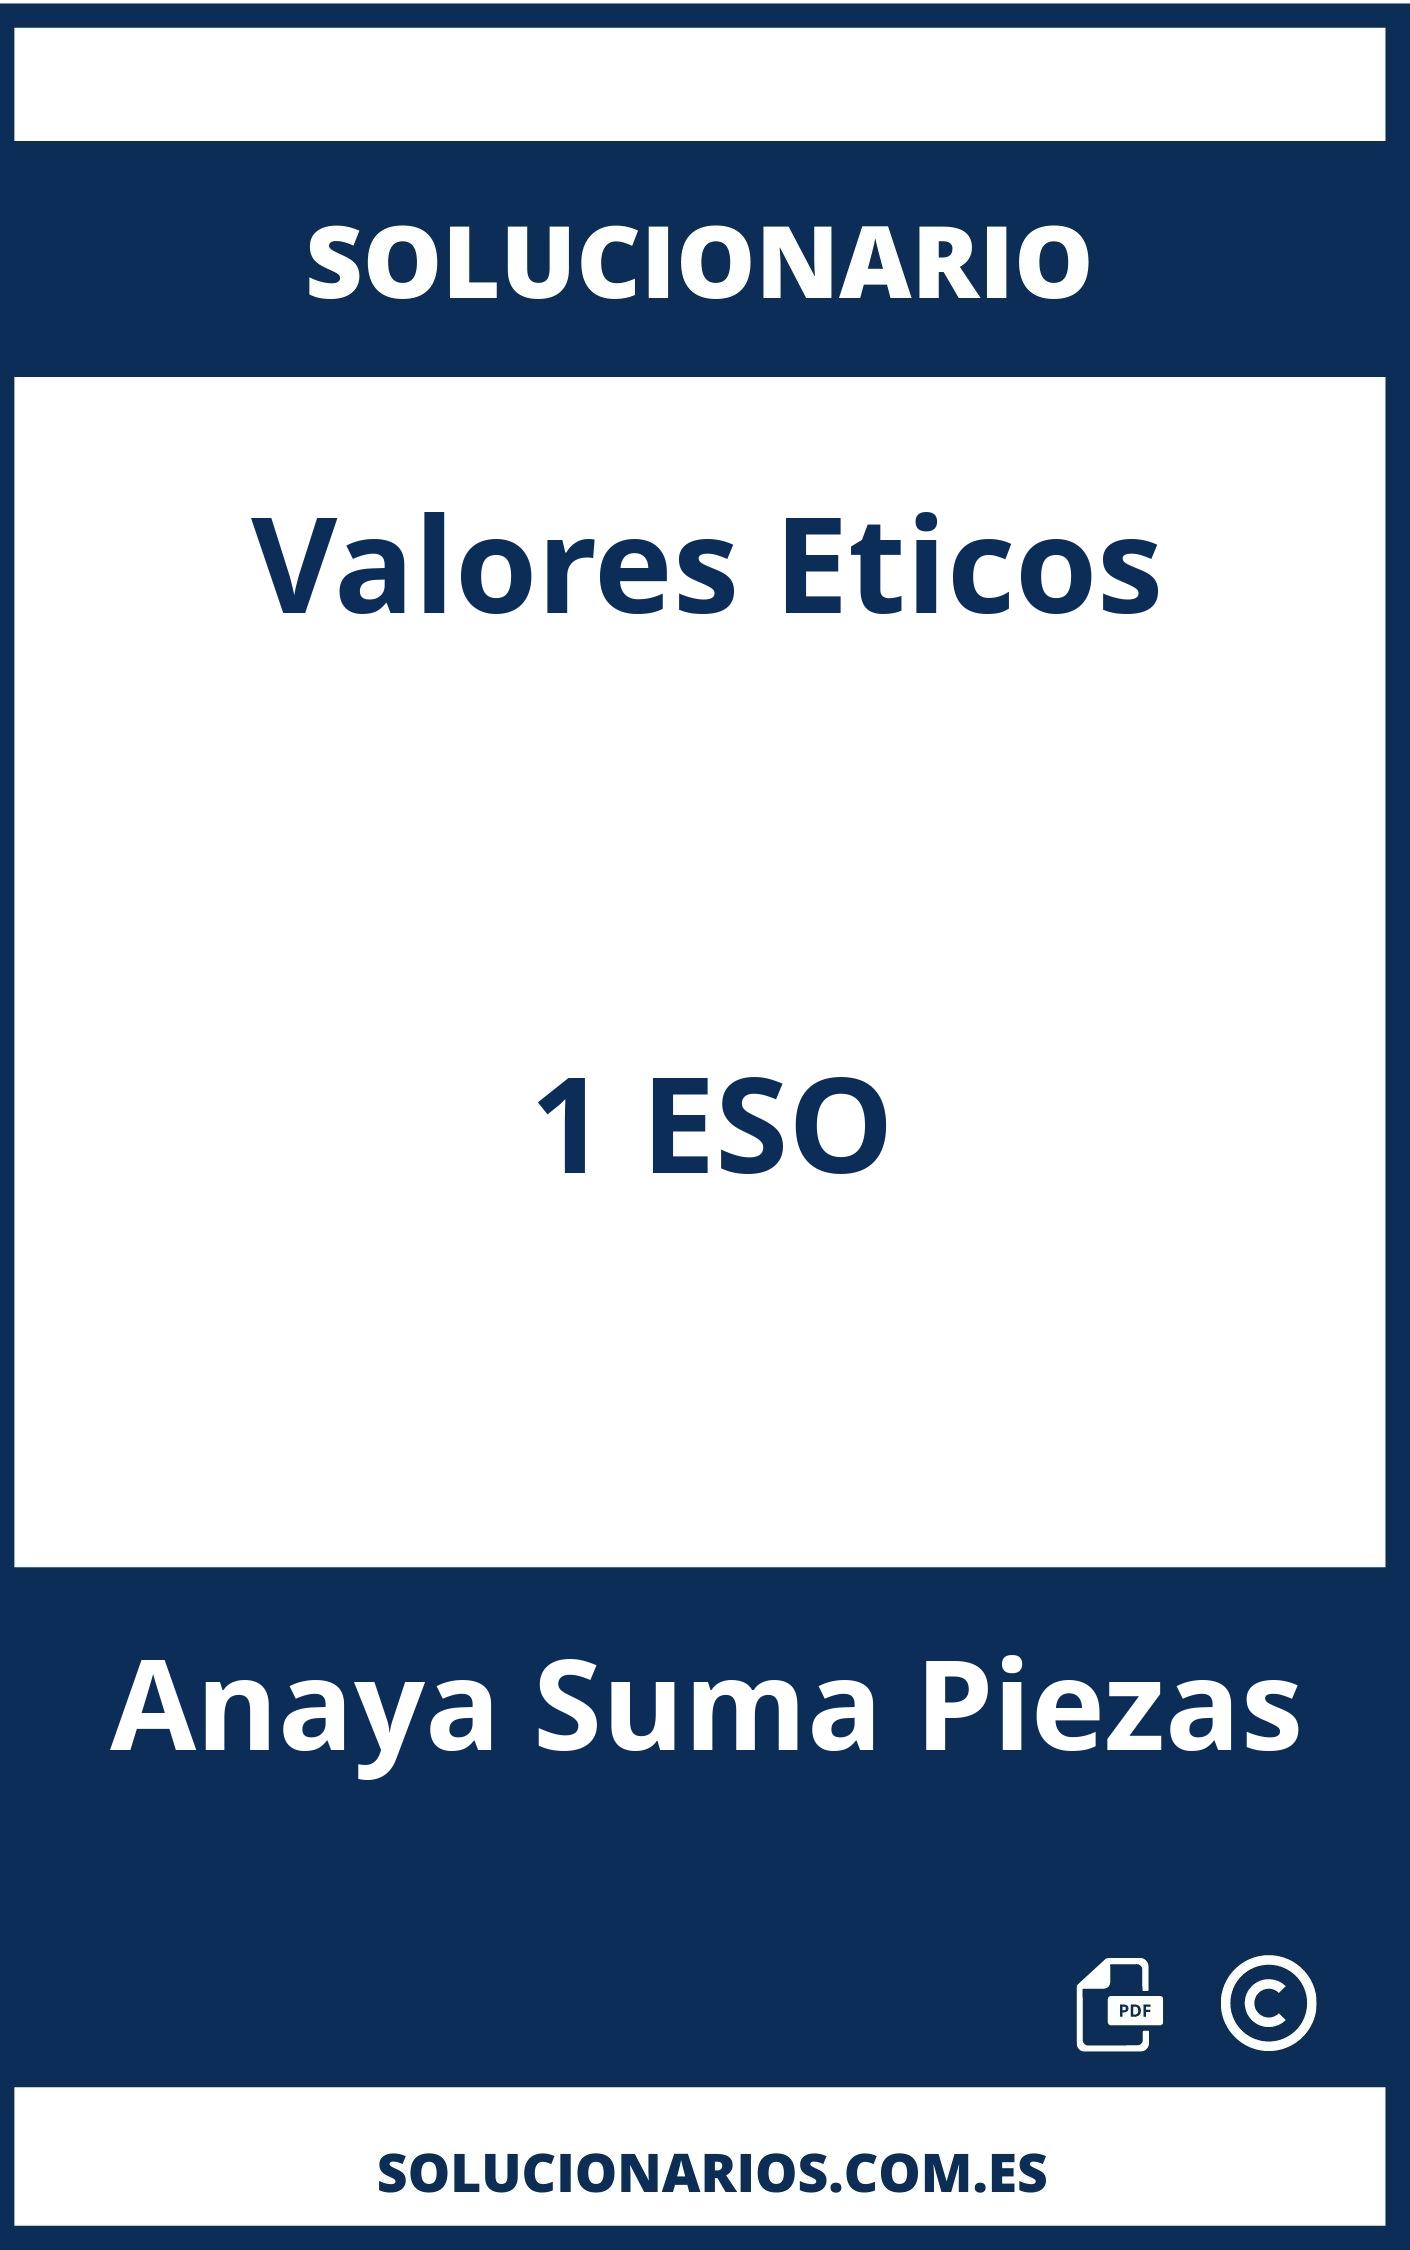 Solucionario Valores Eticos 1 ESO Anaya Suma Piezas